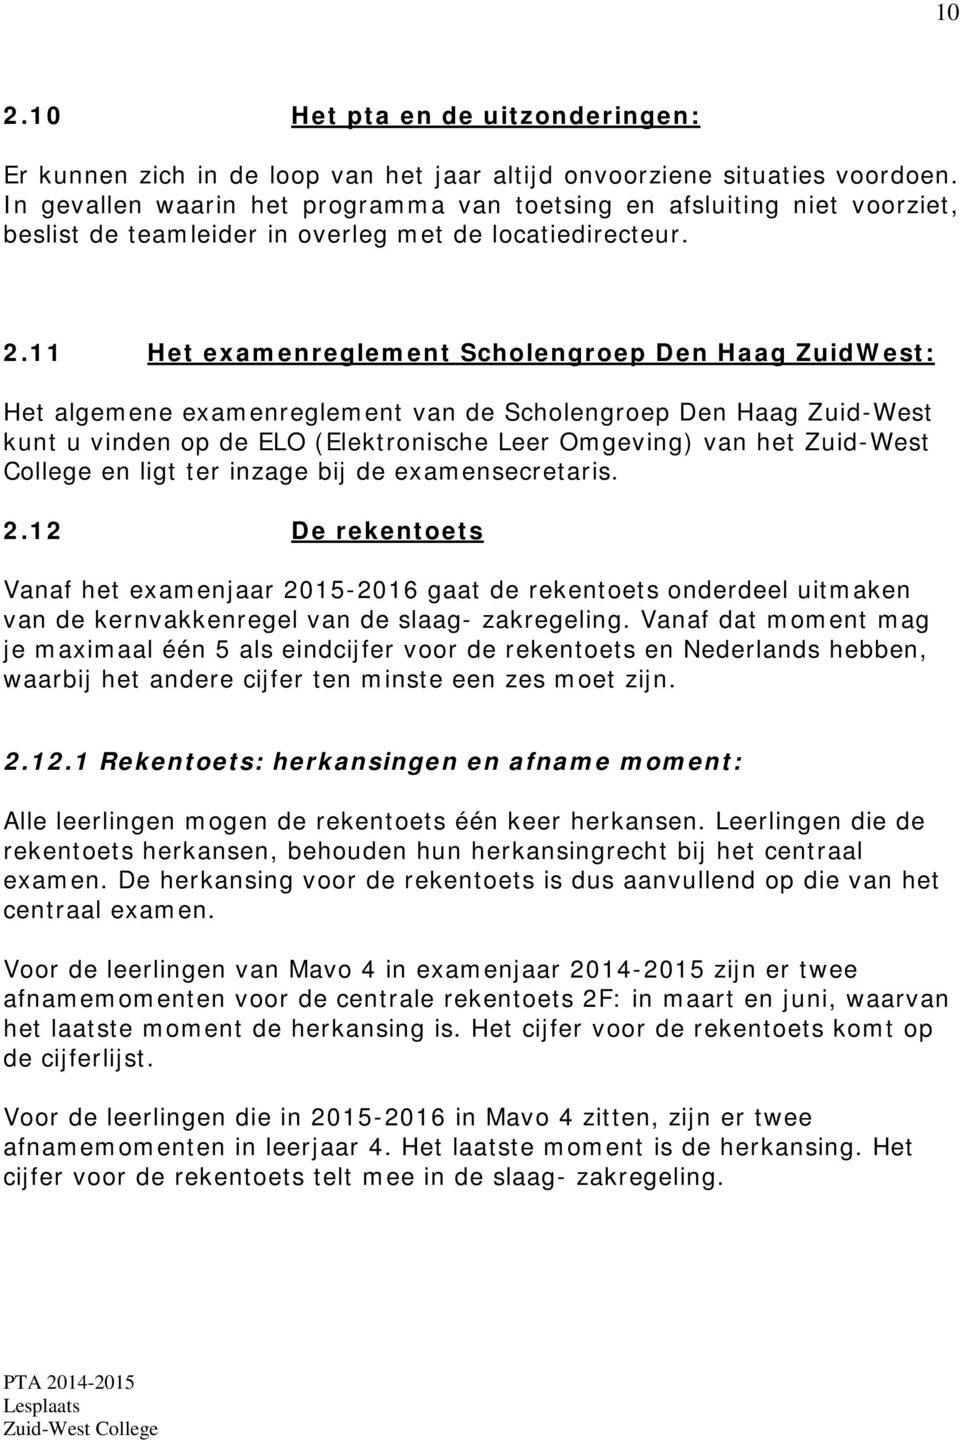 11 Het examenreglement Scholengroep Den Haag ZuidWest: Het algemene examenreglement van de Scholengroep Den Haag Zuid-West kunt u vinden op de ELO (Elektronische Leer Omgeving) van het Zuid-West